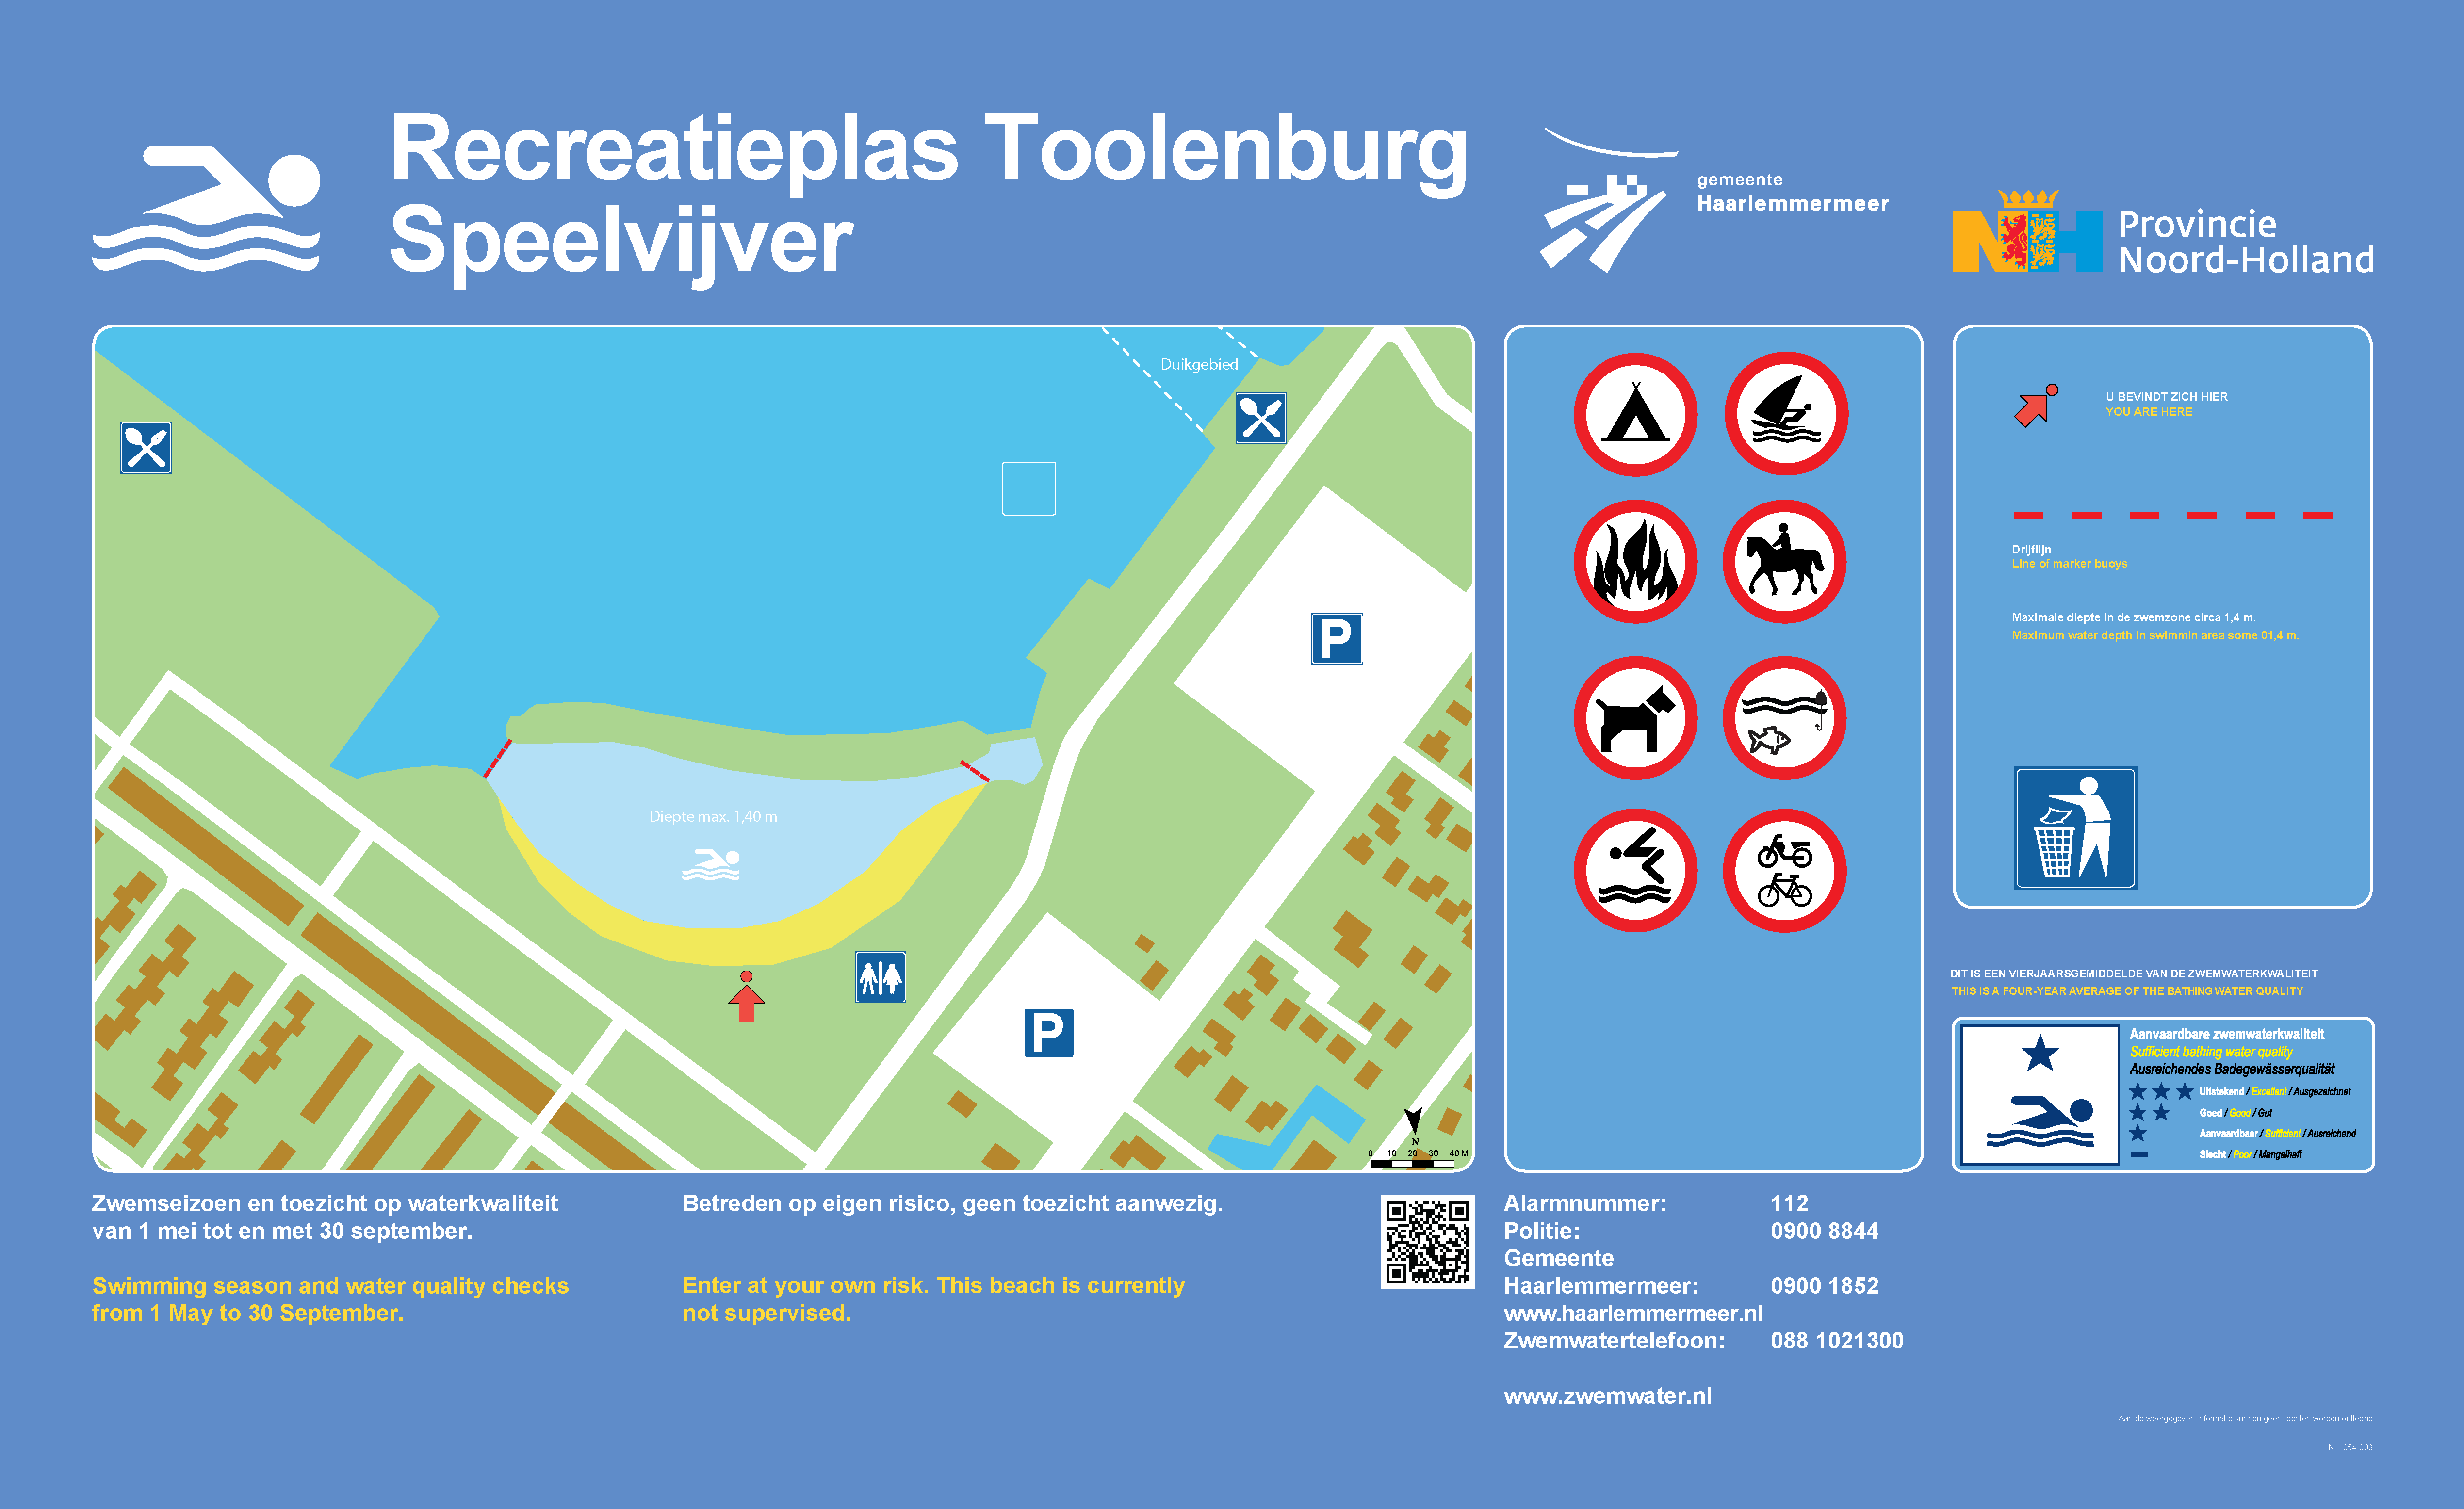 Het informatiebord bij zwemlocatie Recreatieplas Toolenburg Speelvijver